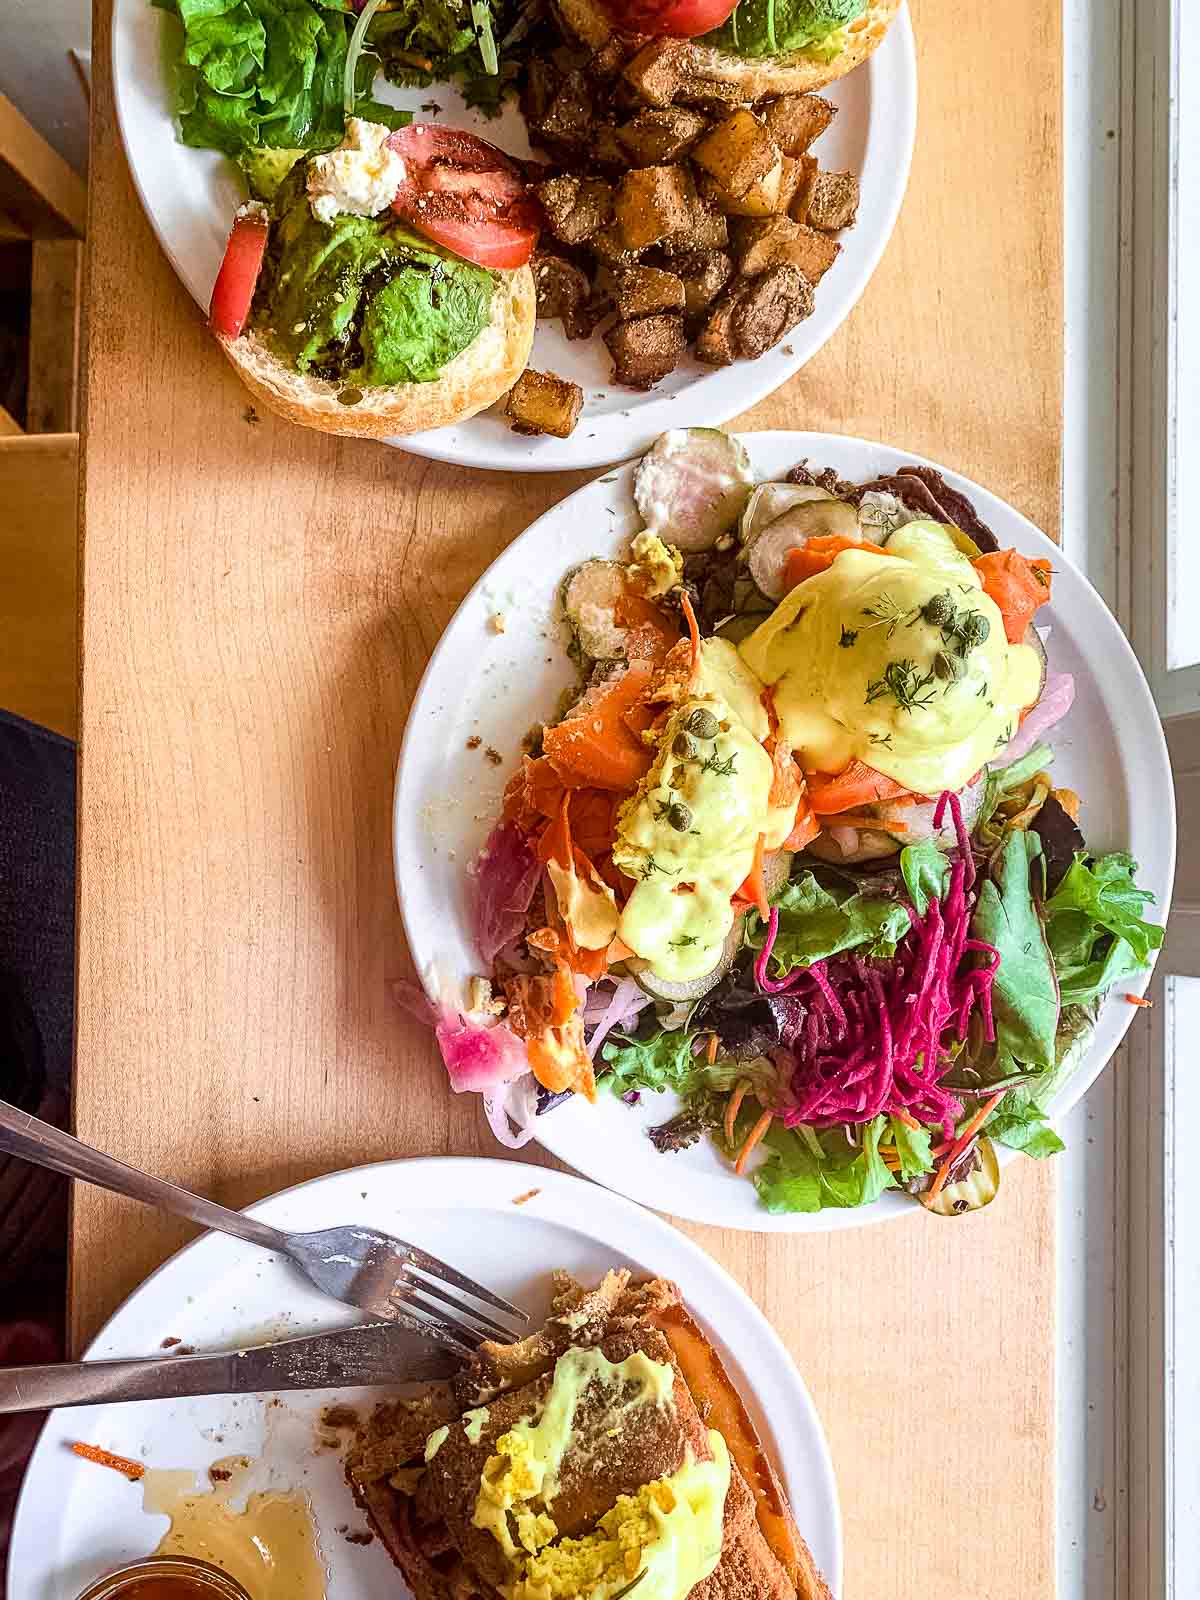 25 Best Vegan Restaurants in Vancouver BC for 2023 - Vegan brunch bennies from Chickpea